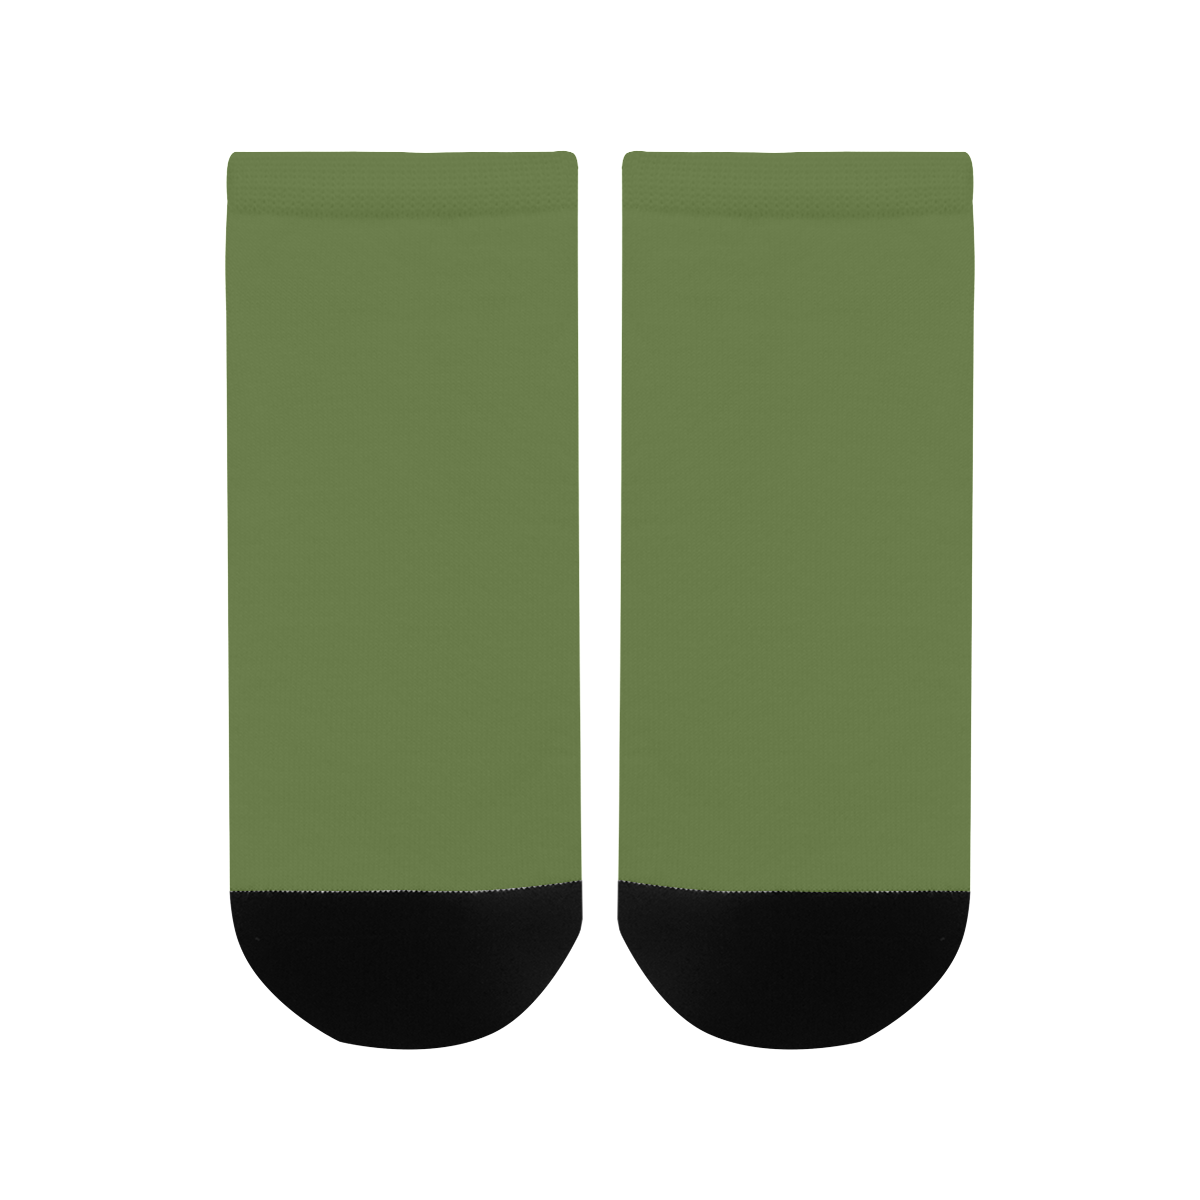 color dark olive green Men's Ankle Socks